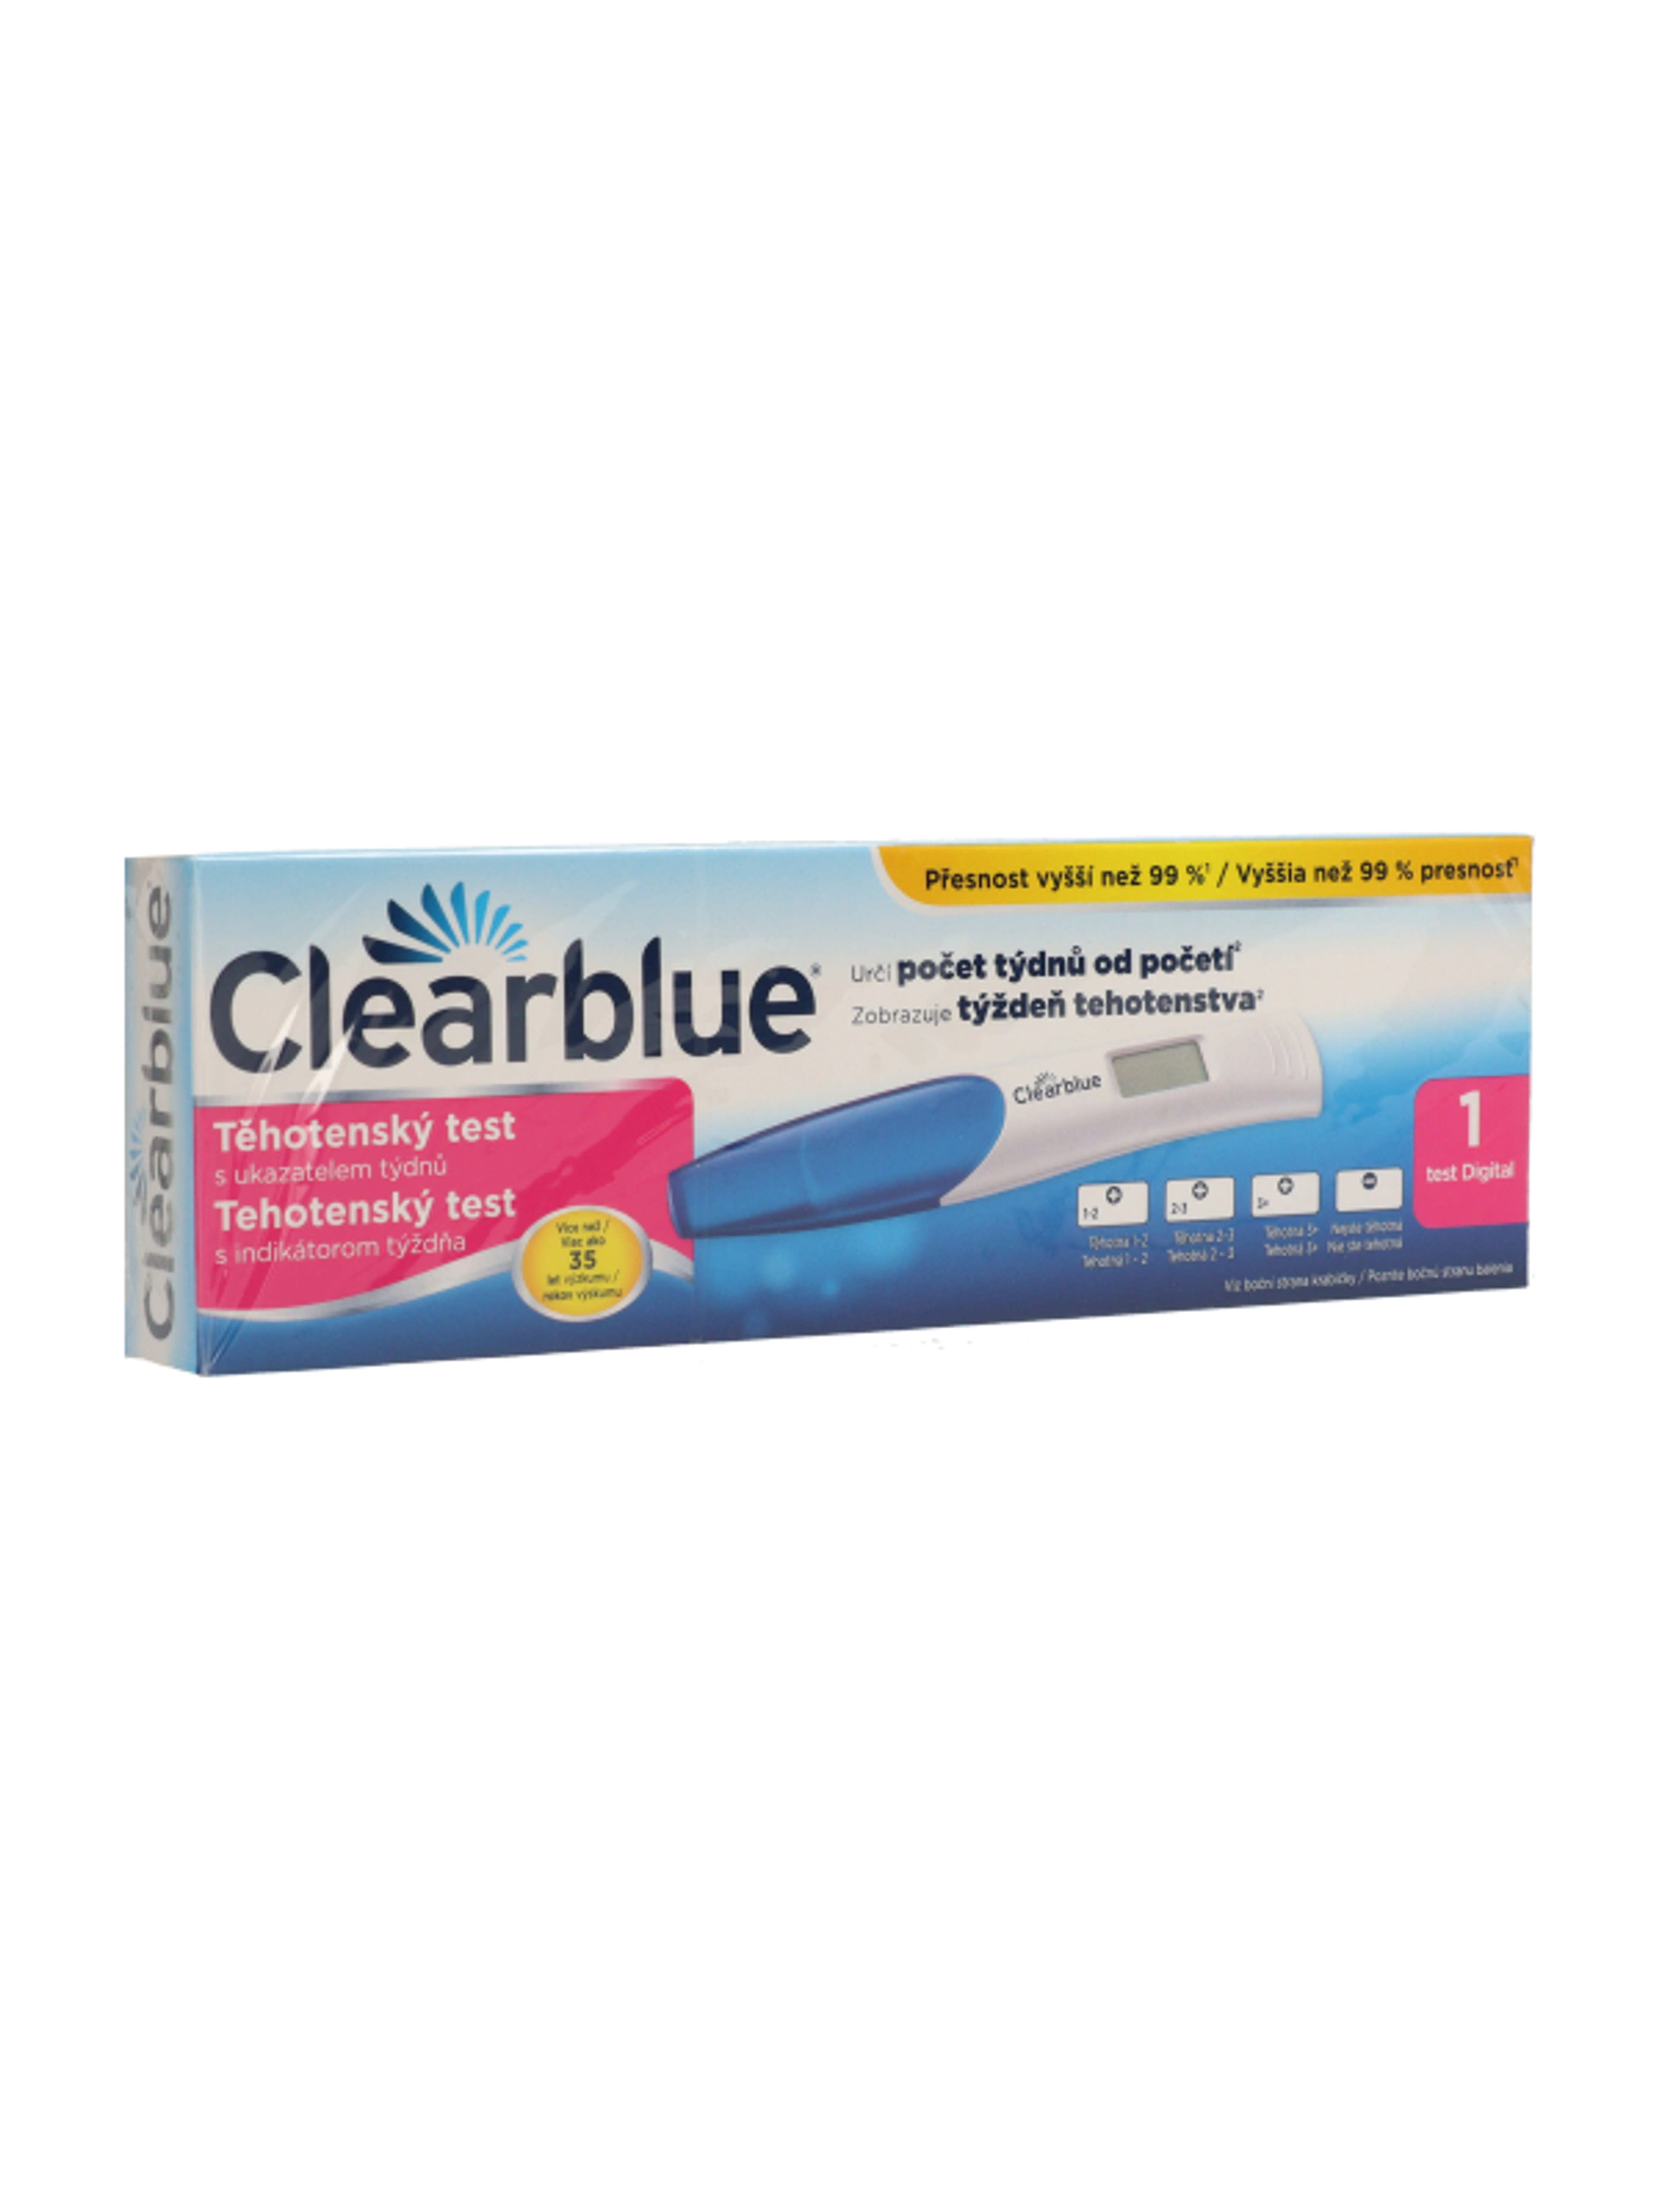 Clearblue Digitális terhességi teszt fogamzásjelzovel - 1 db-5